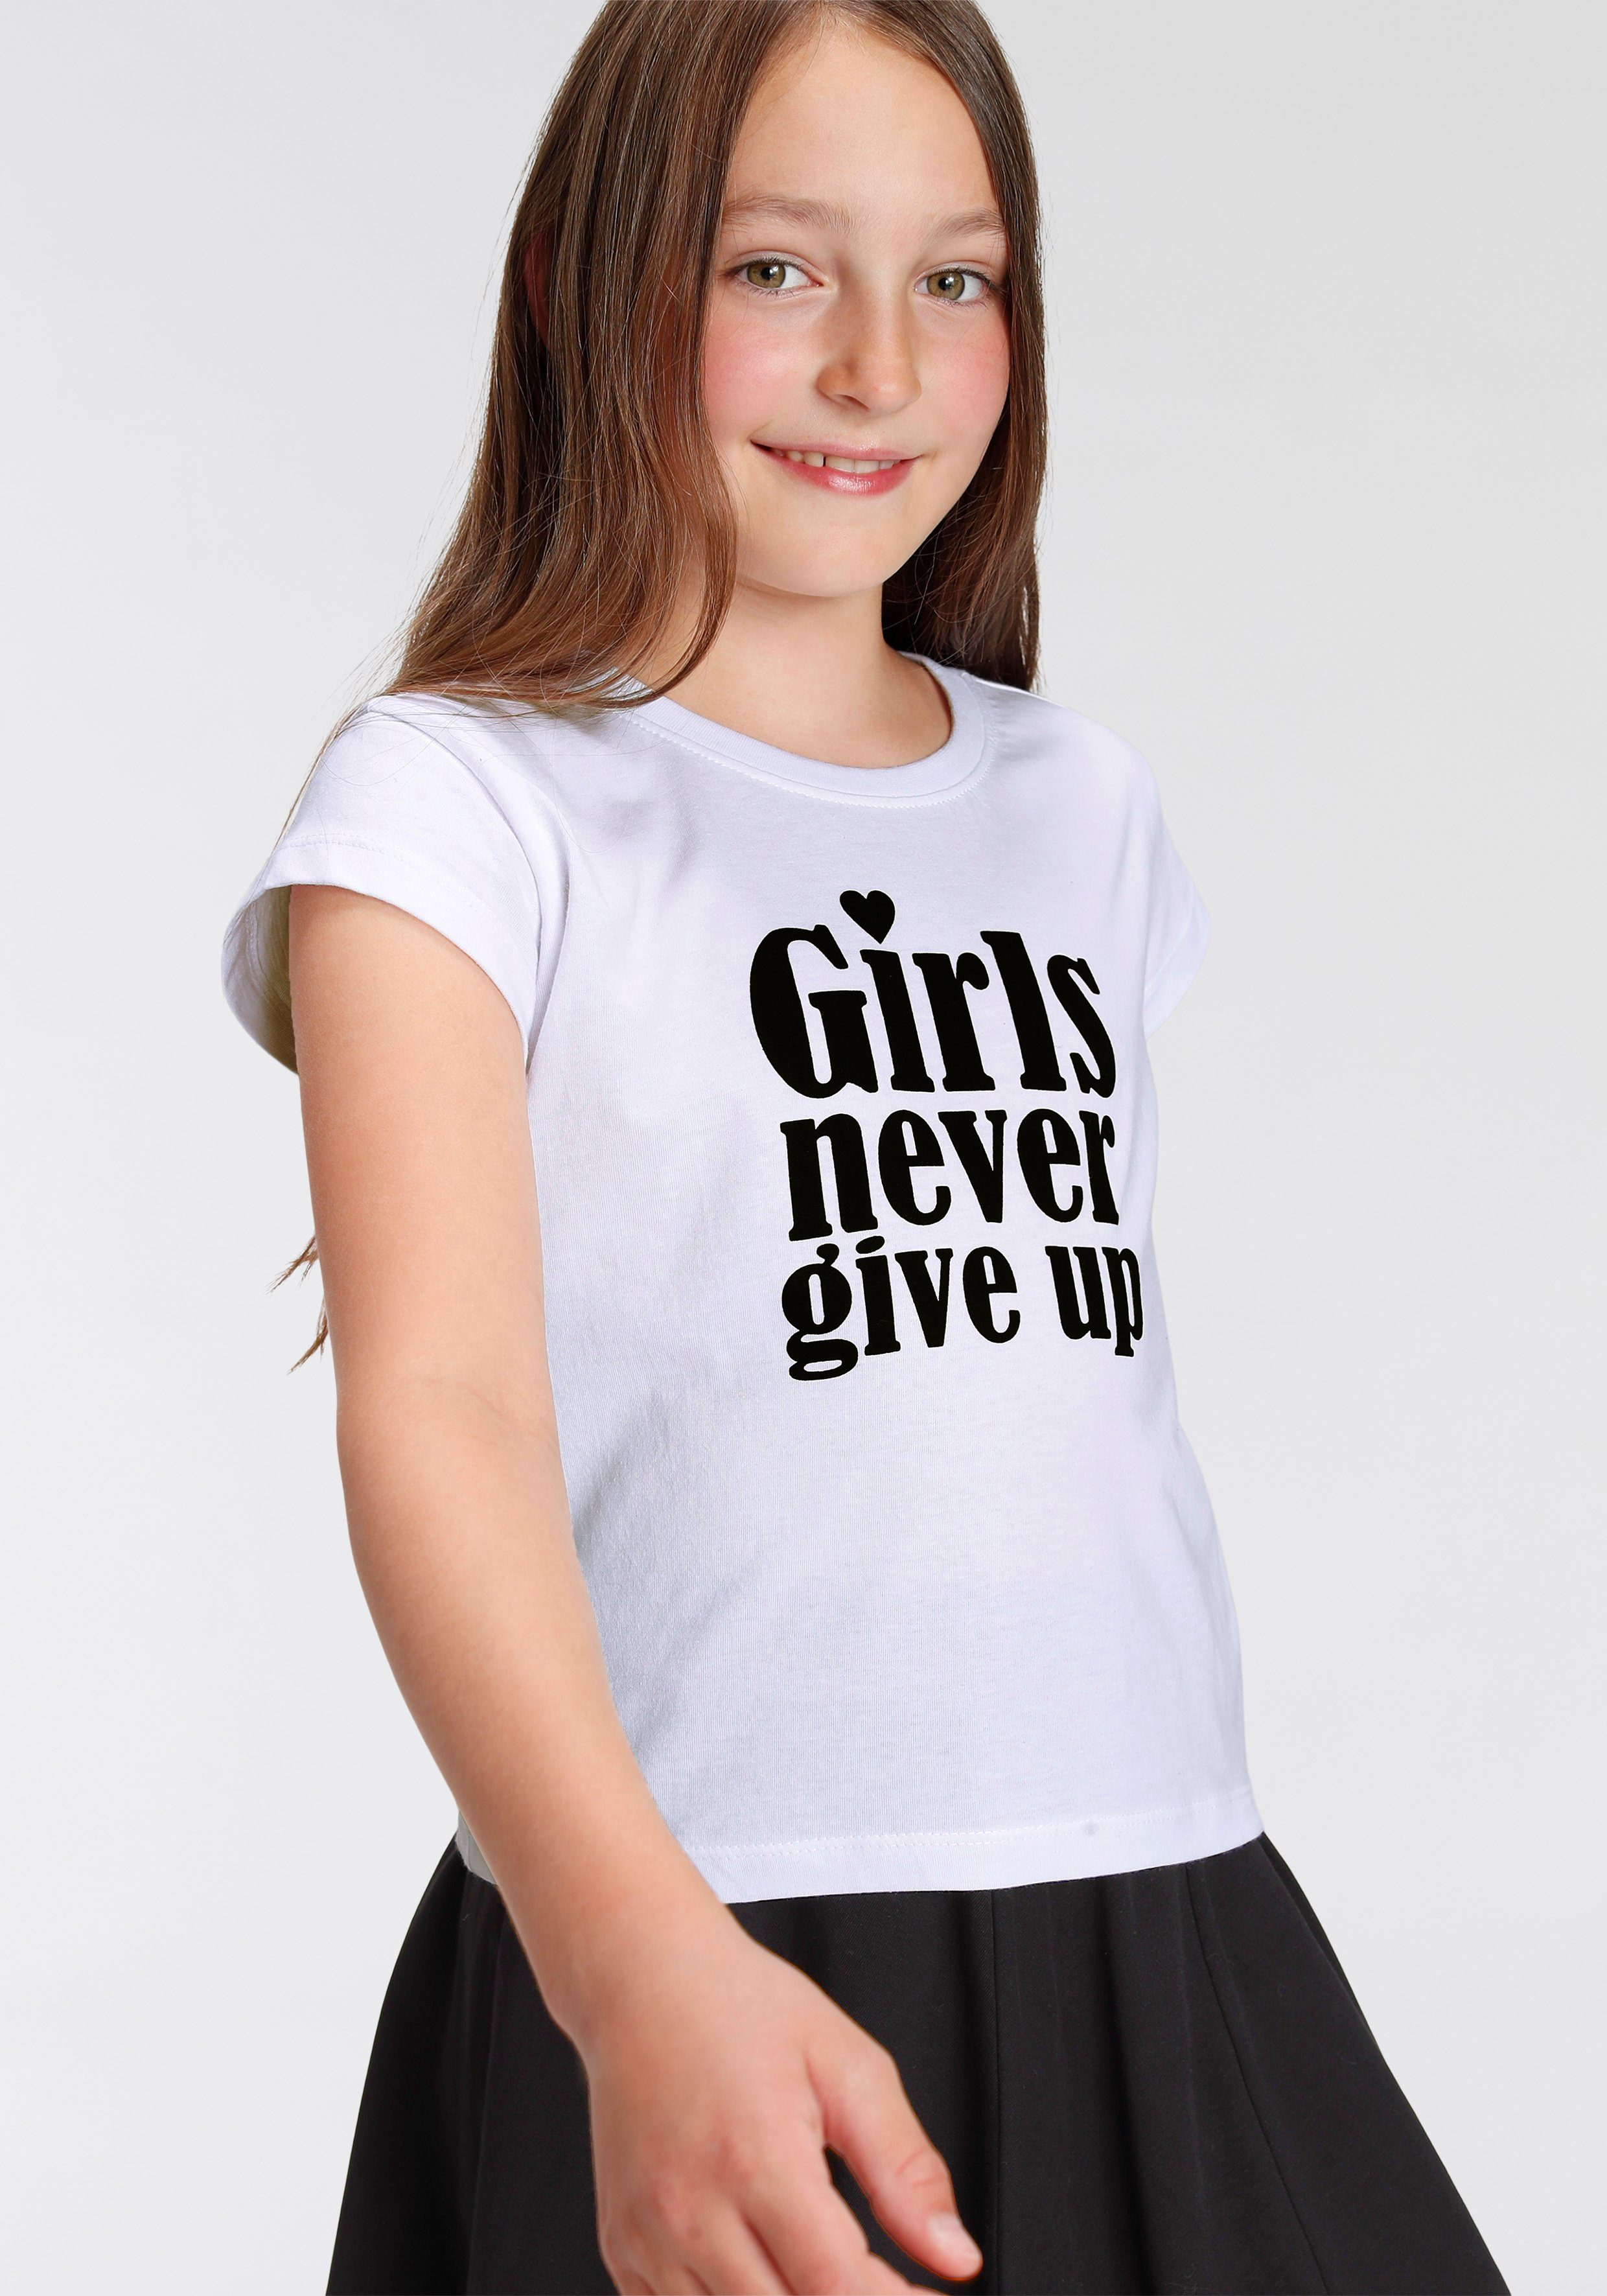 KIDSWORLD T-Shirt Girls nerver give up kurze Form modische